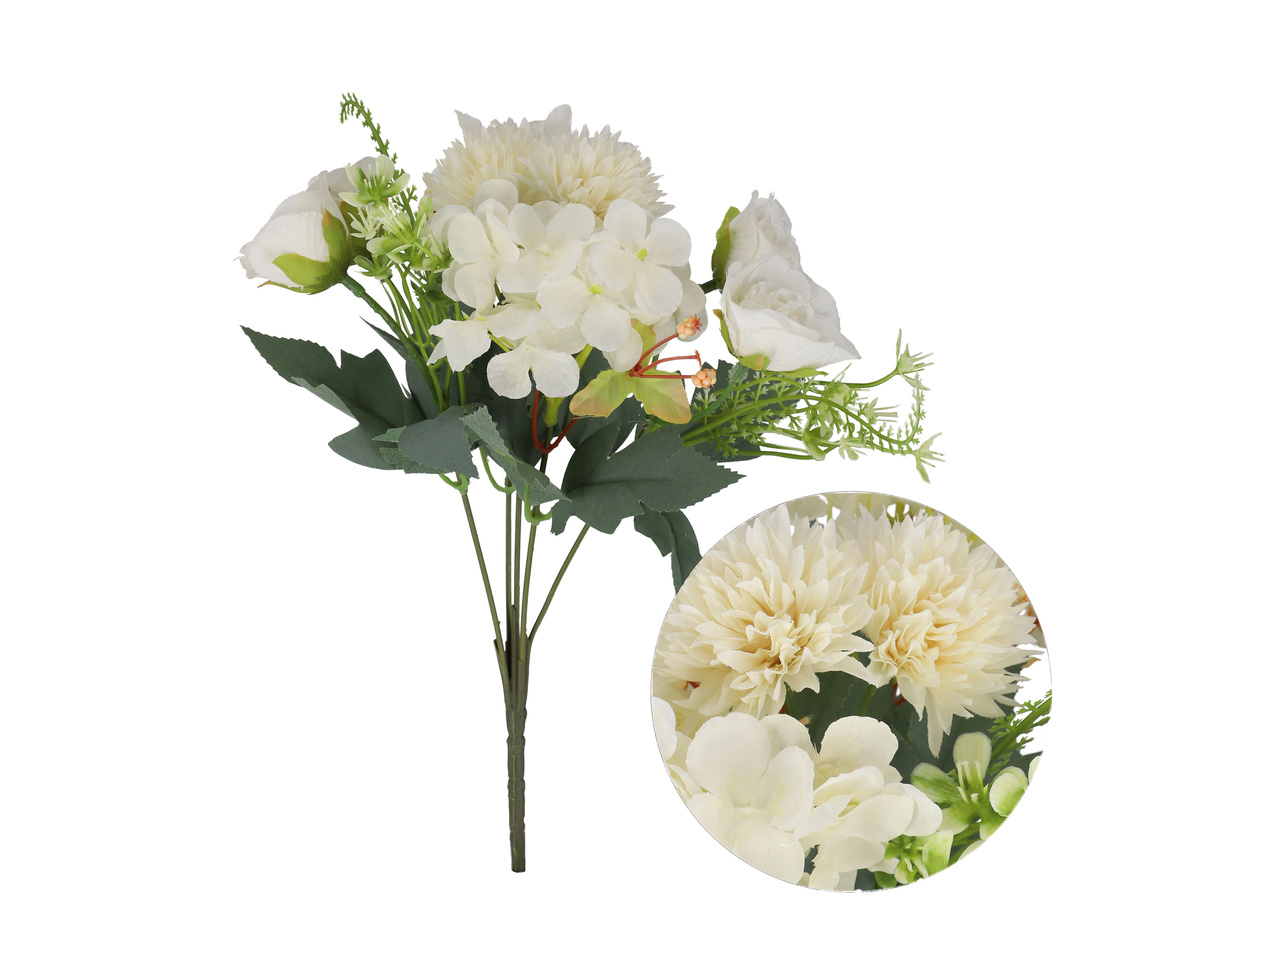 Bukiet sztucznych kwiatów , cena 12,99 PLN 
Bukiet sztucznych kwiatów 3 wzory ...